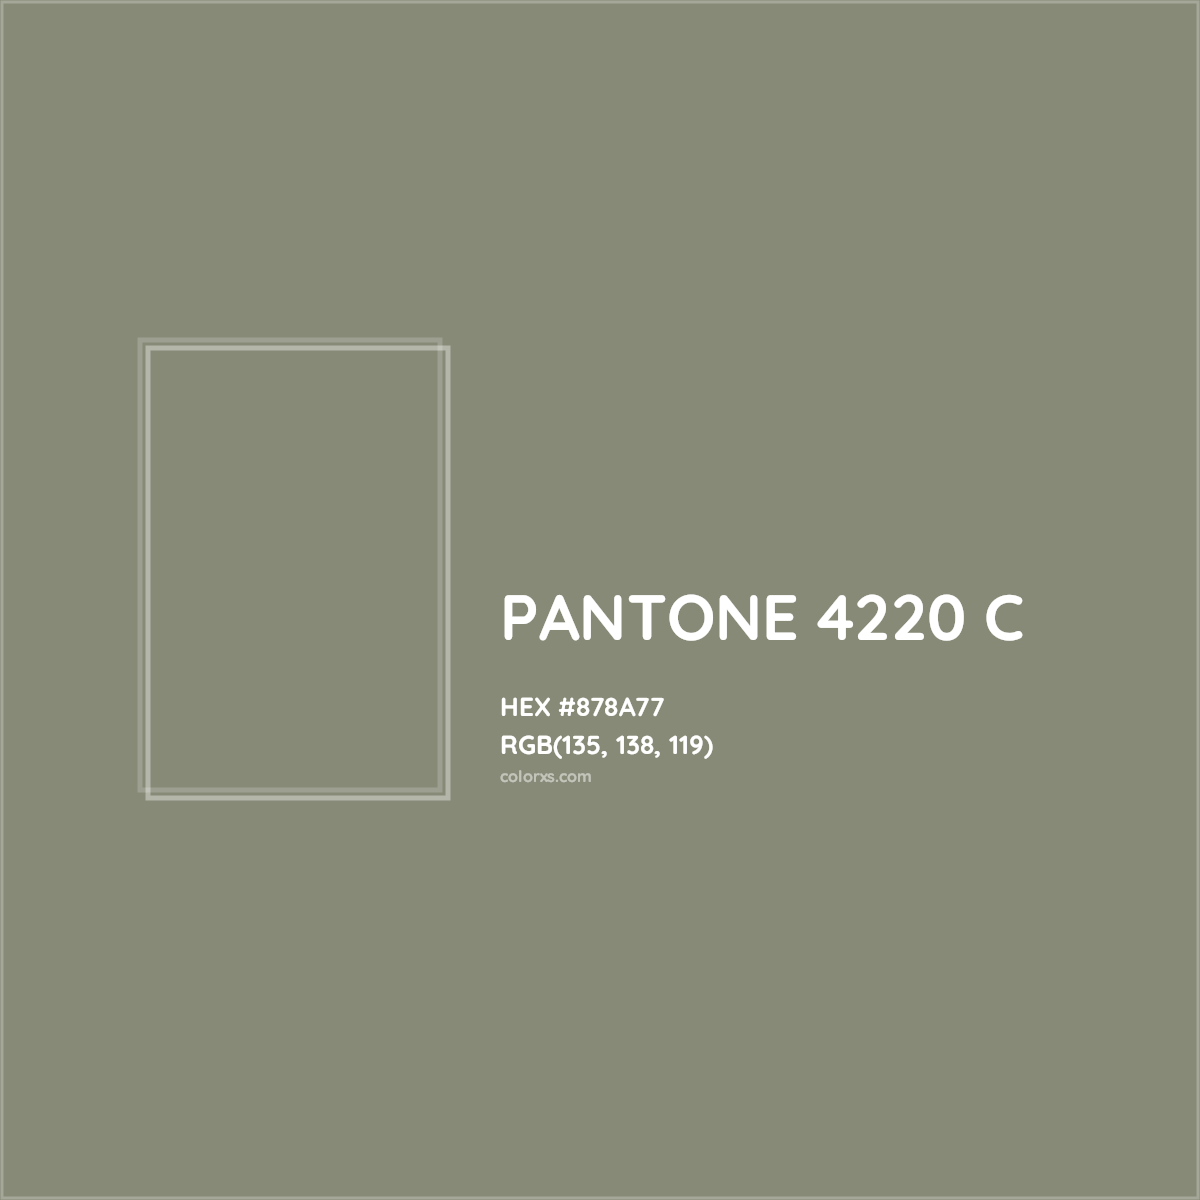 HEX #878A77 PANTONE 4220 C CMS Pantone PMS - Color Code